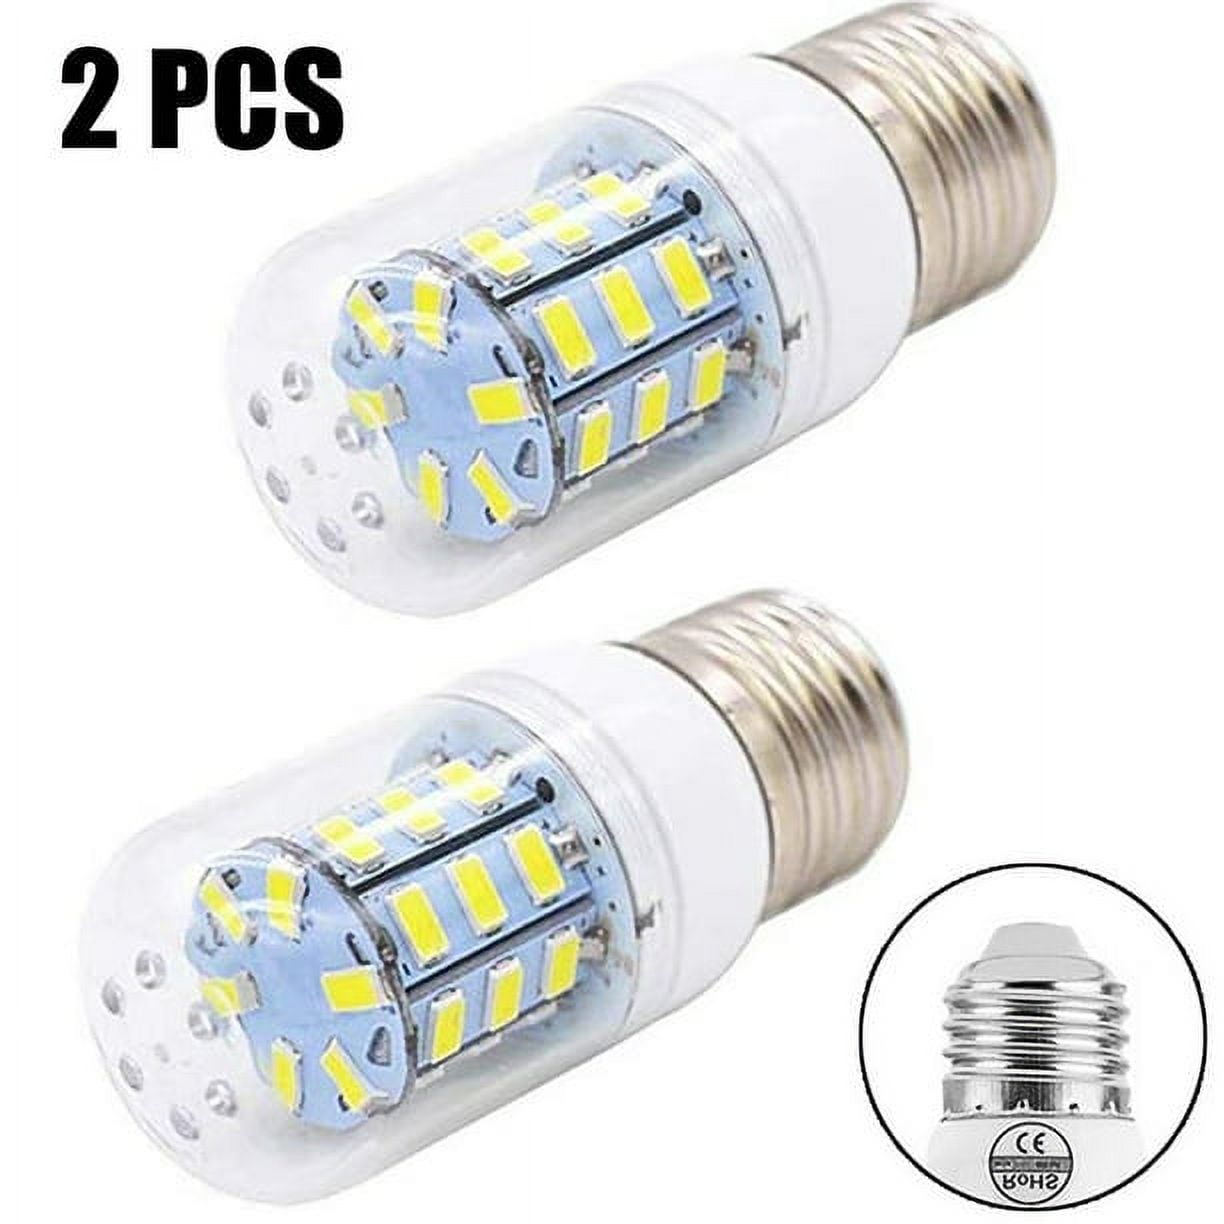 2pcs LED Light Bulb For Frigidaire Kenmore Refrigerator 5304511738